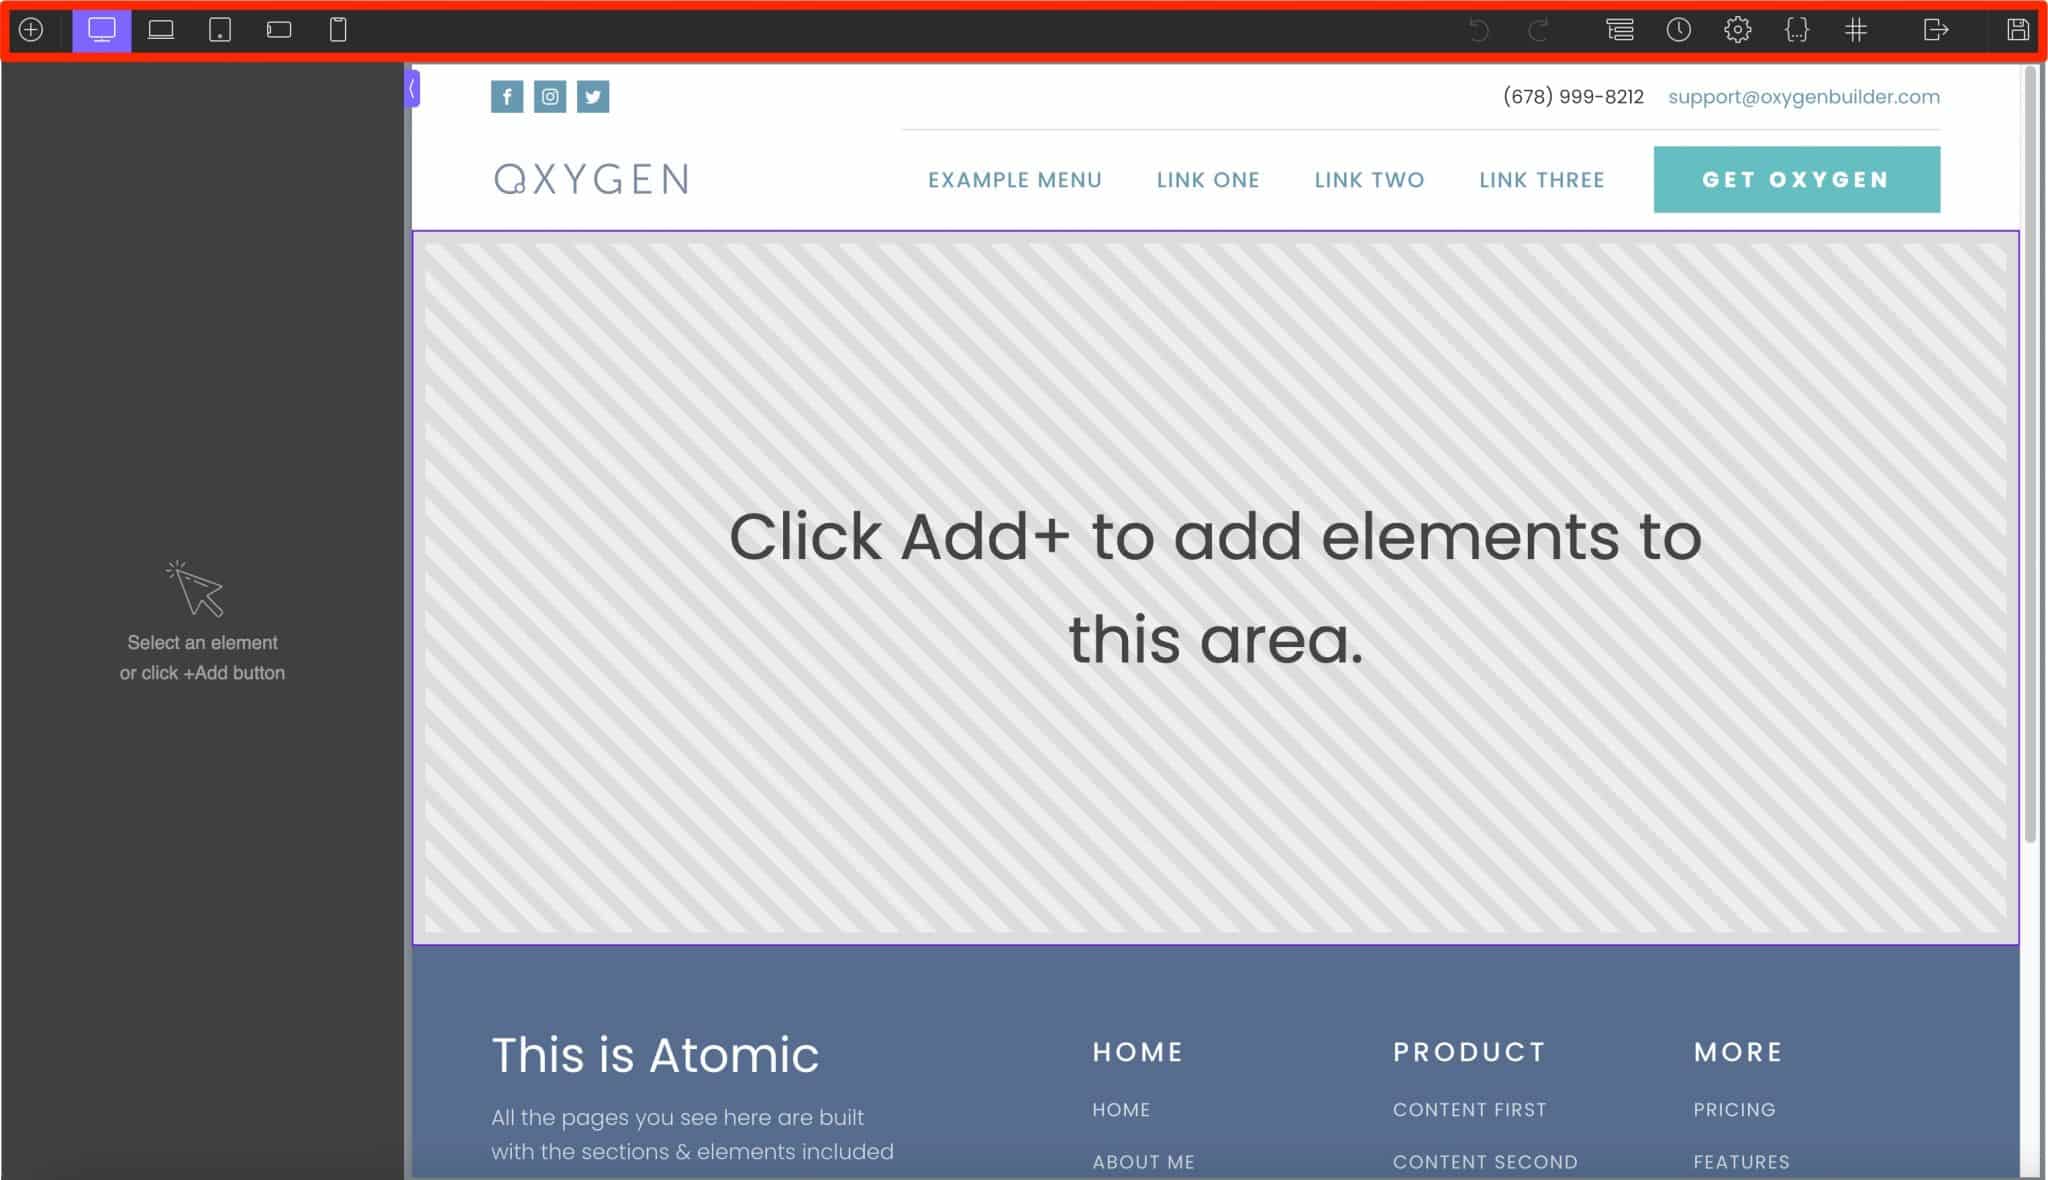 Oxygen propose une barre d'outils pour éditer votre page. 